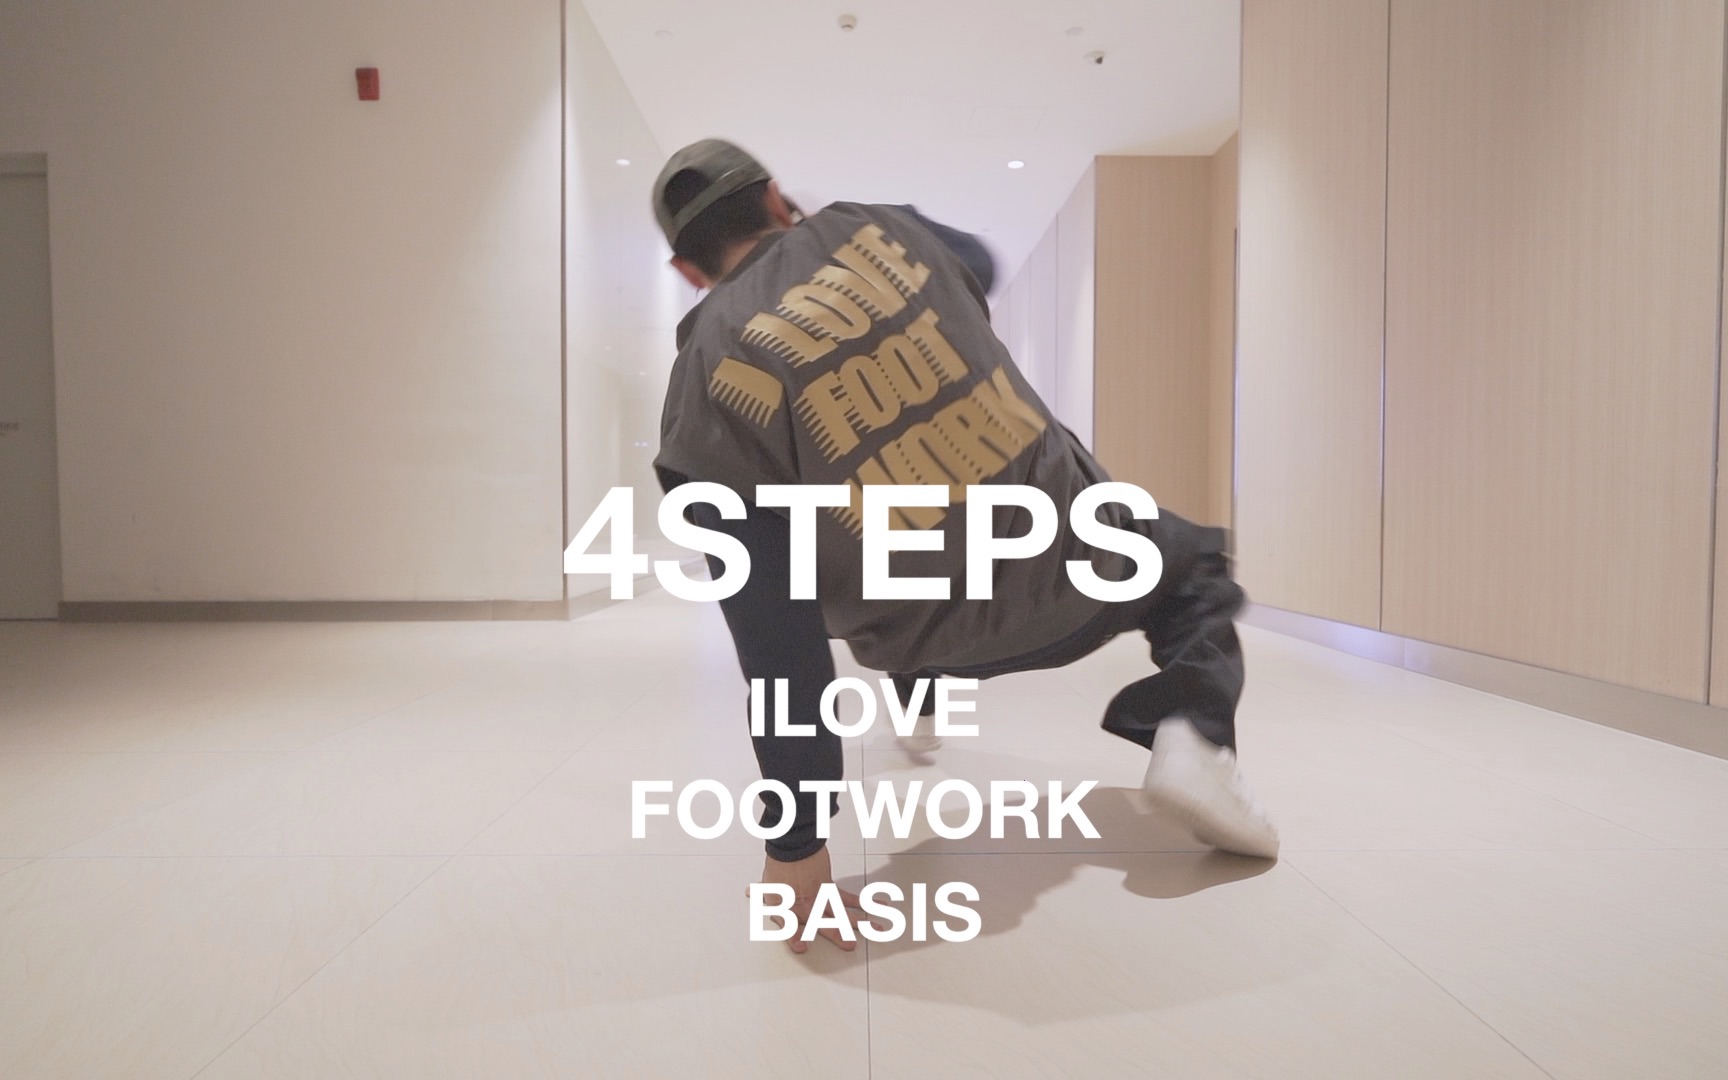 4STEPS ilovefootwork basis (footwork教学演示) #bboy #footwork #北腿